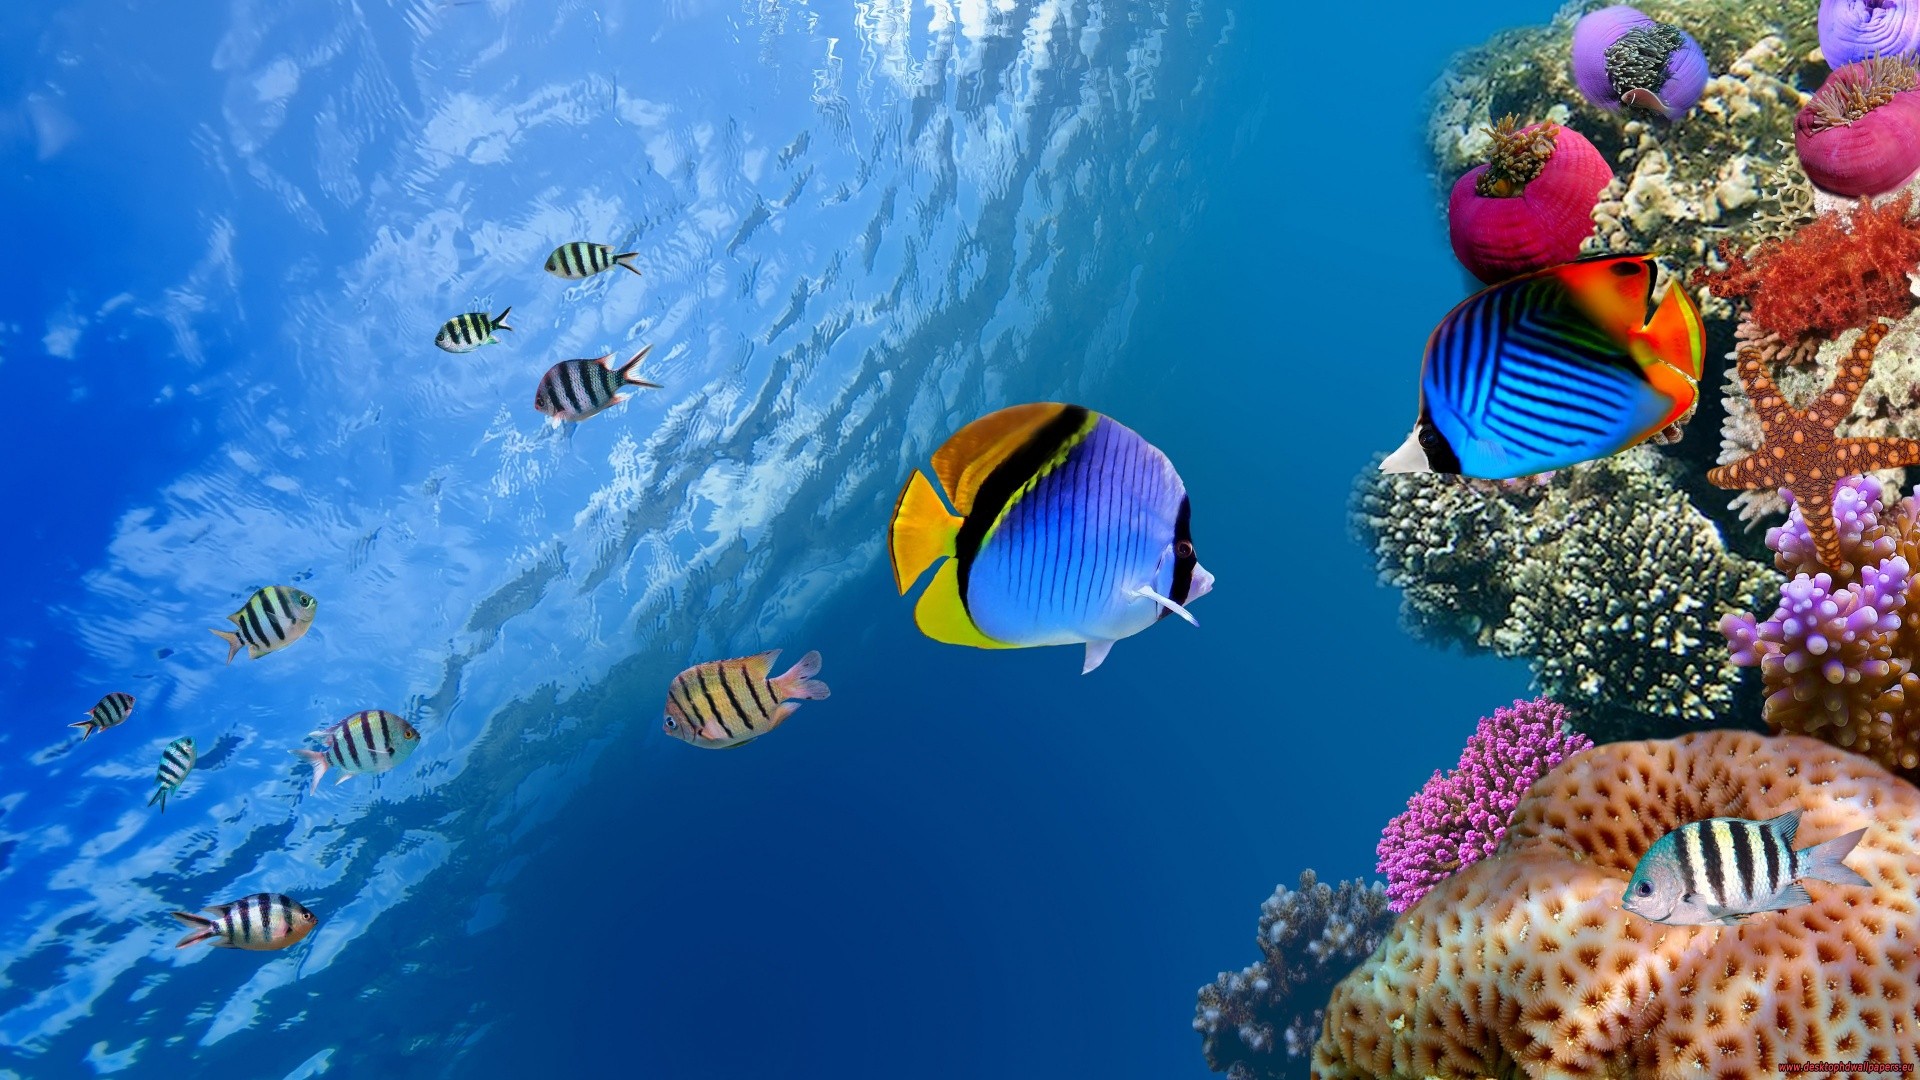 nature, Fish, Underwater, Photo manipulation Wallpaper